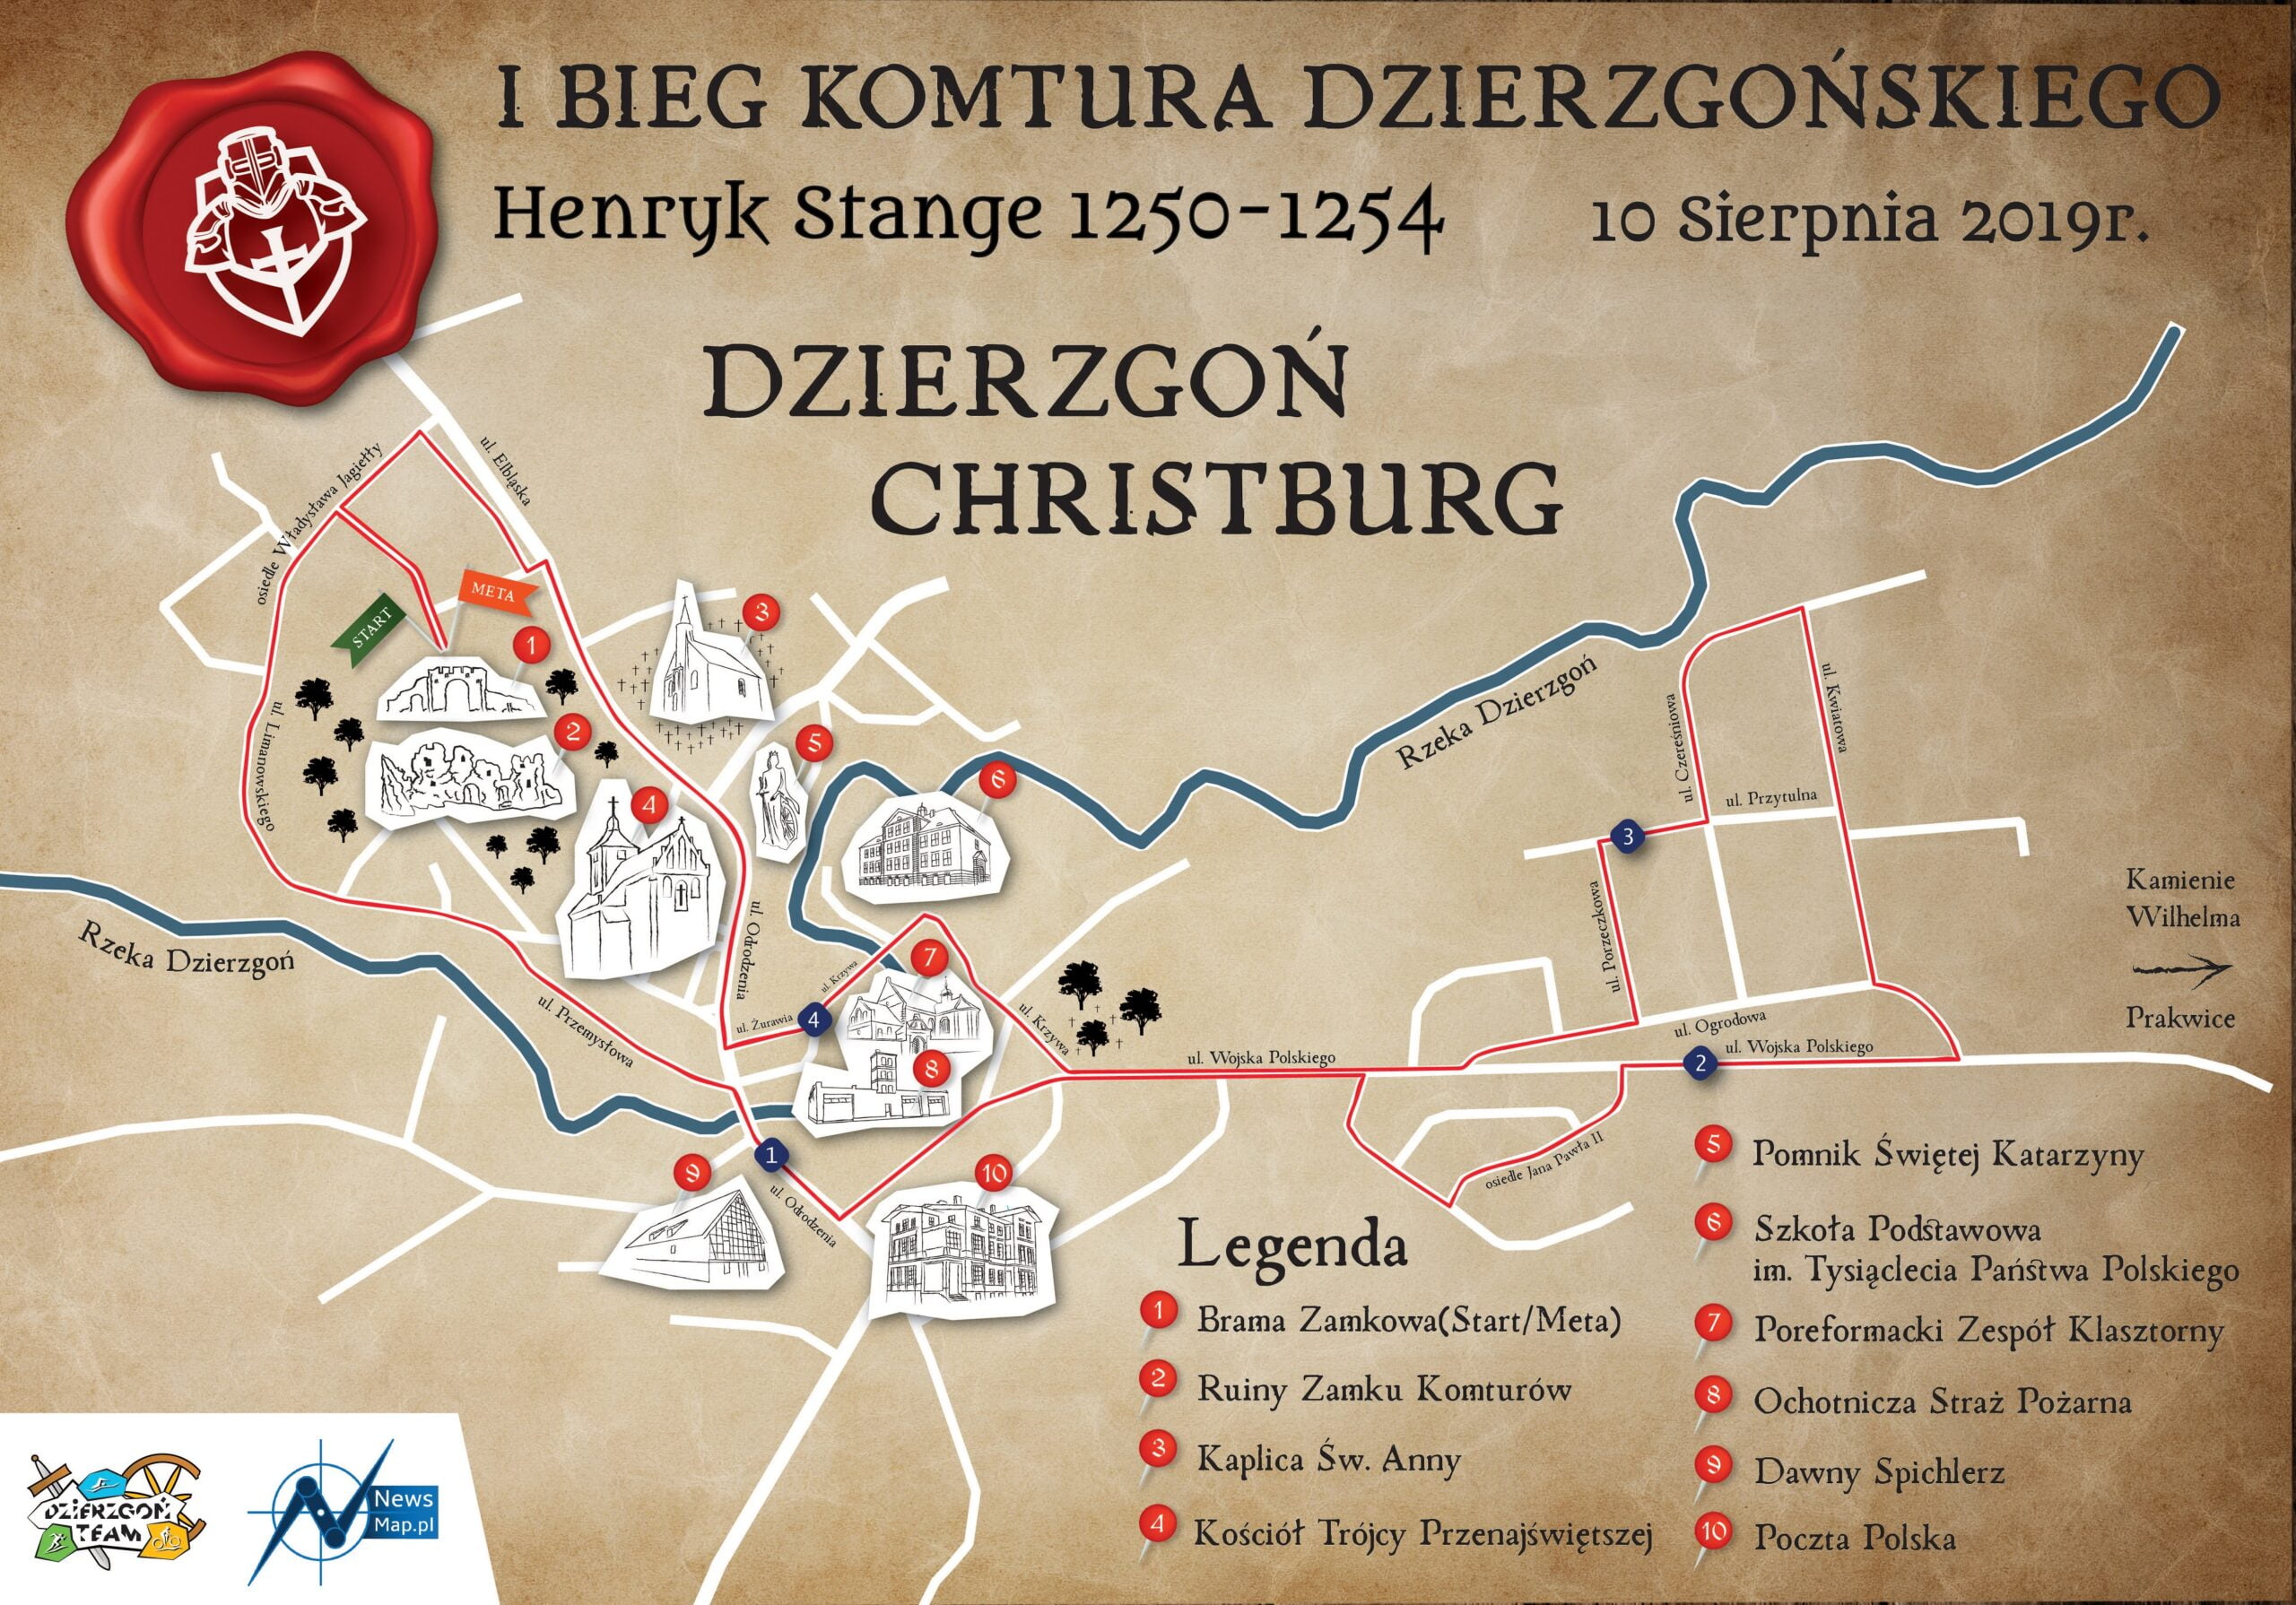 Mapa-biegu-Komtura-Dzierzgonskiego-—-kopia-scaled